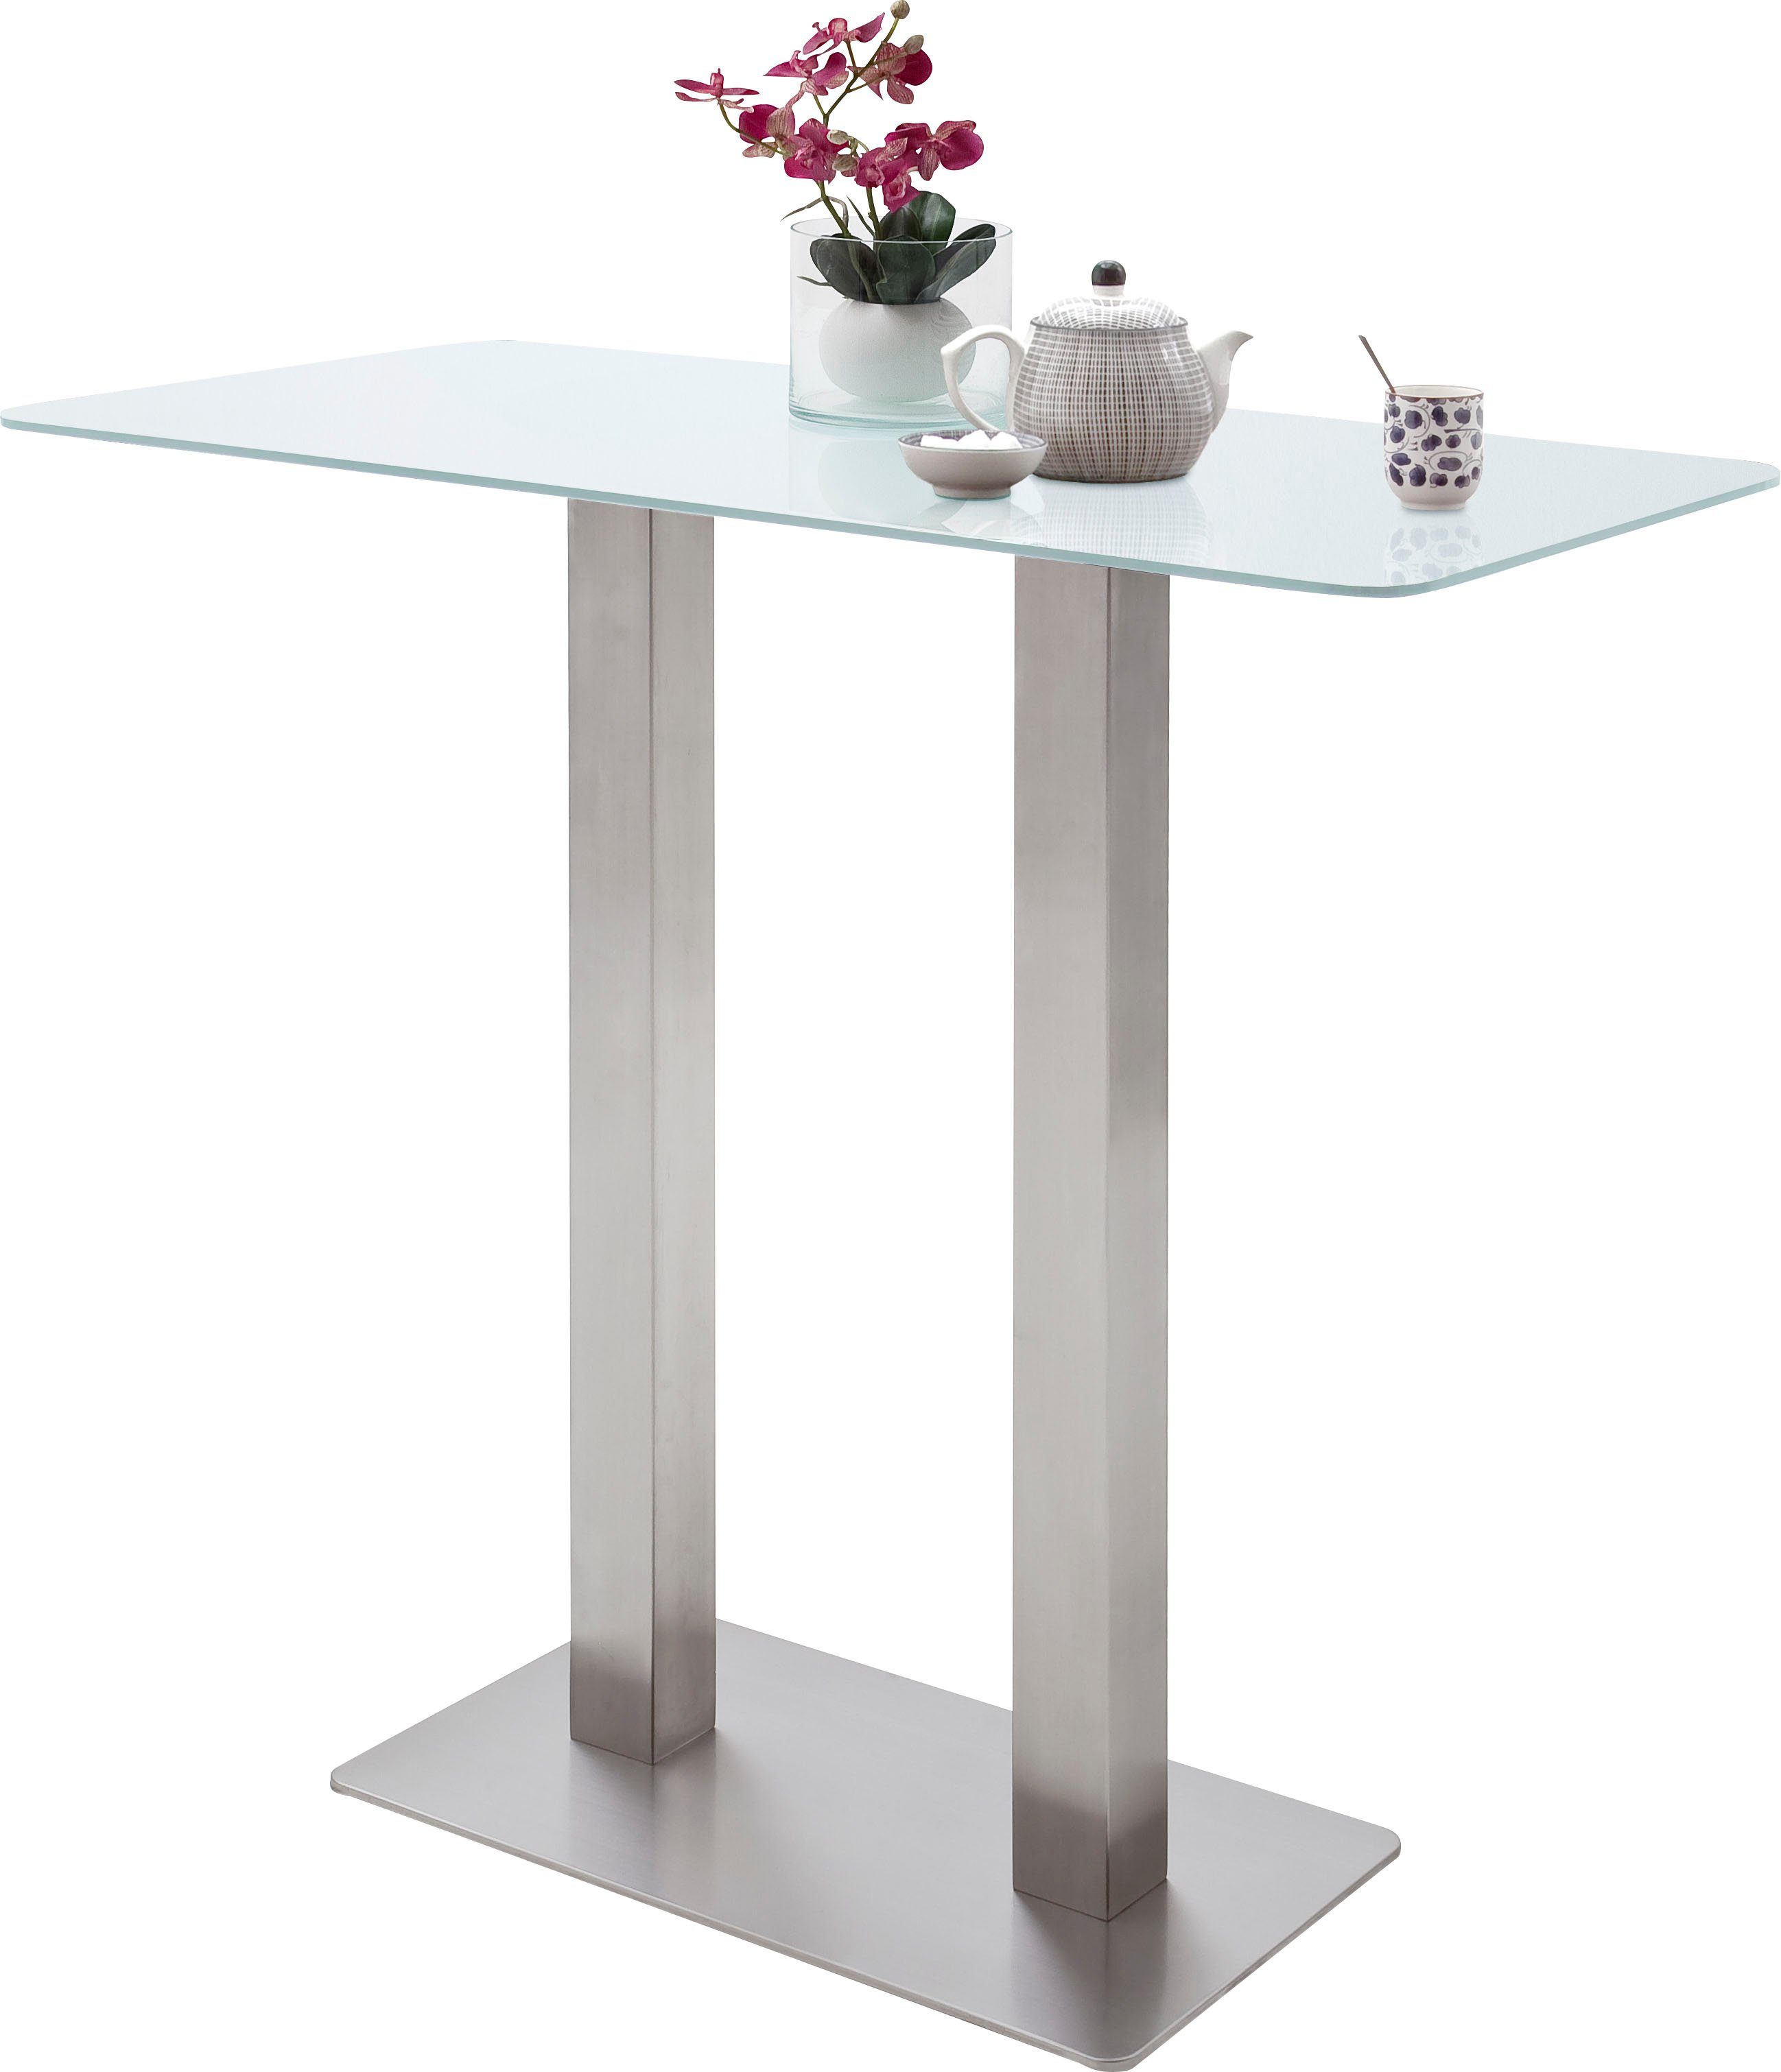 MCA furniture Bartisch Zarina, Bartisch mit Glaskeramik Tischplatte mit Edelstahl Gestell